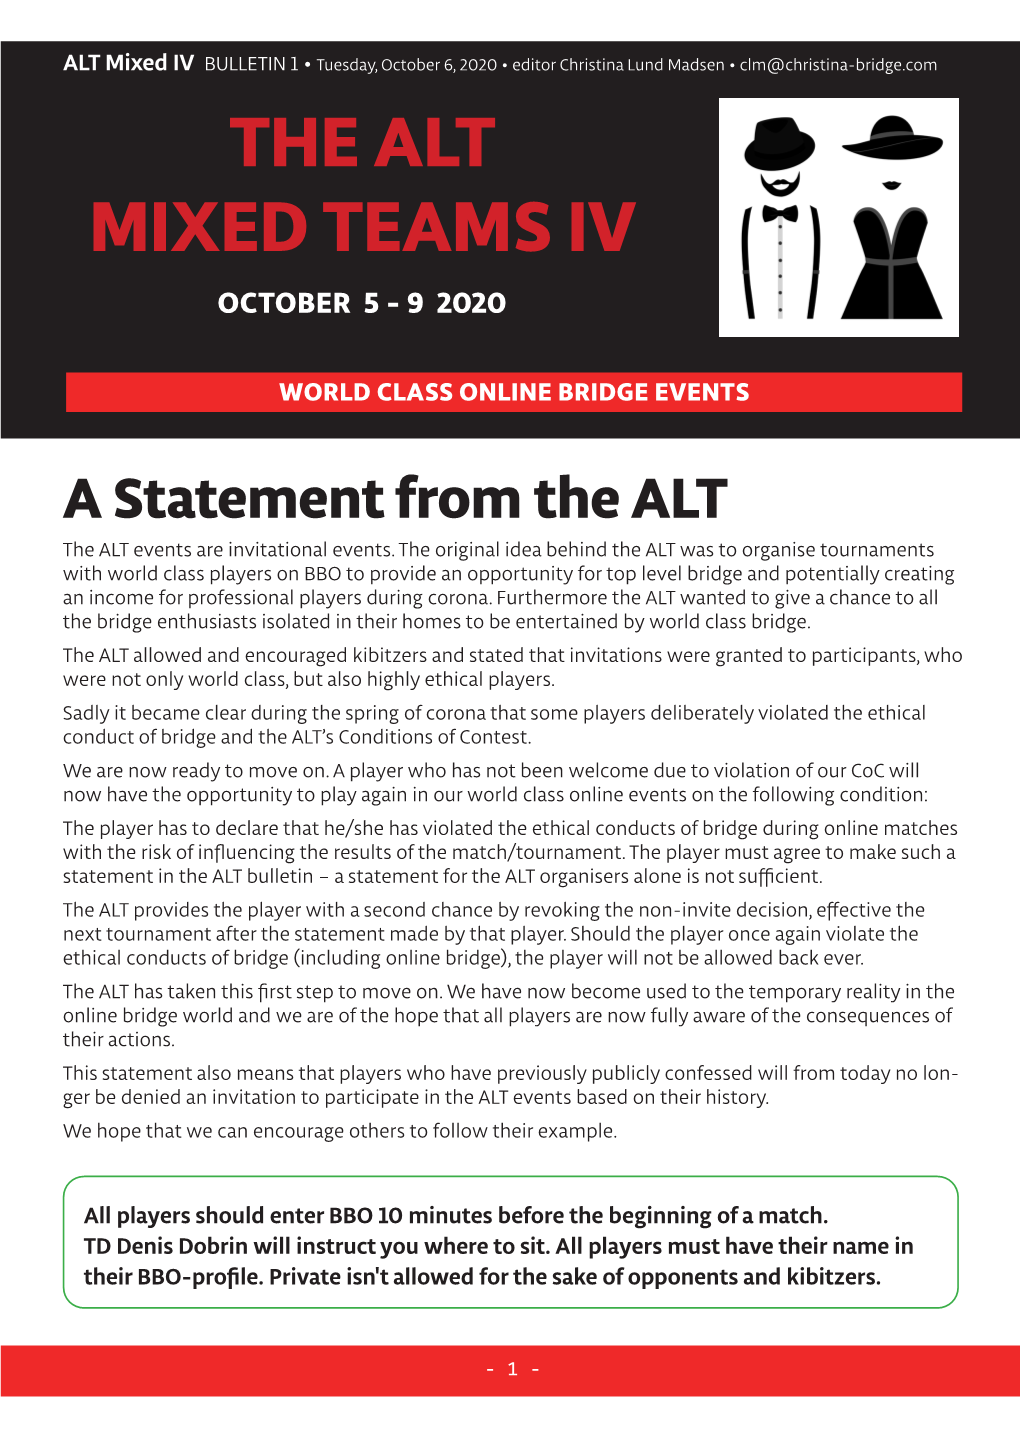 The Alt Mixed Teams Iv October 5 - 9 2020